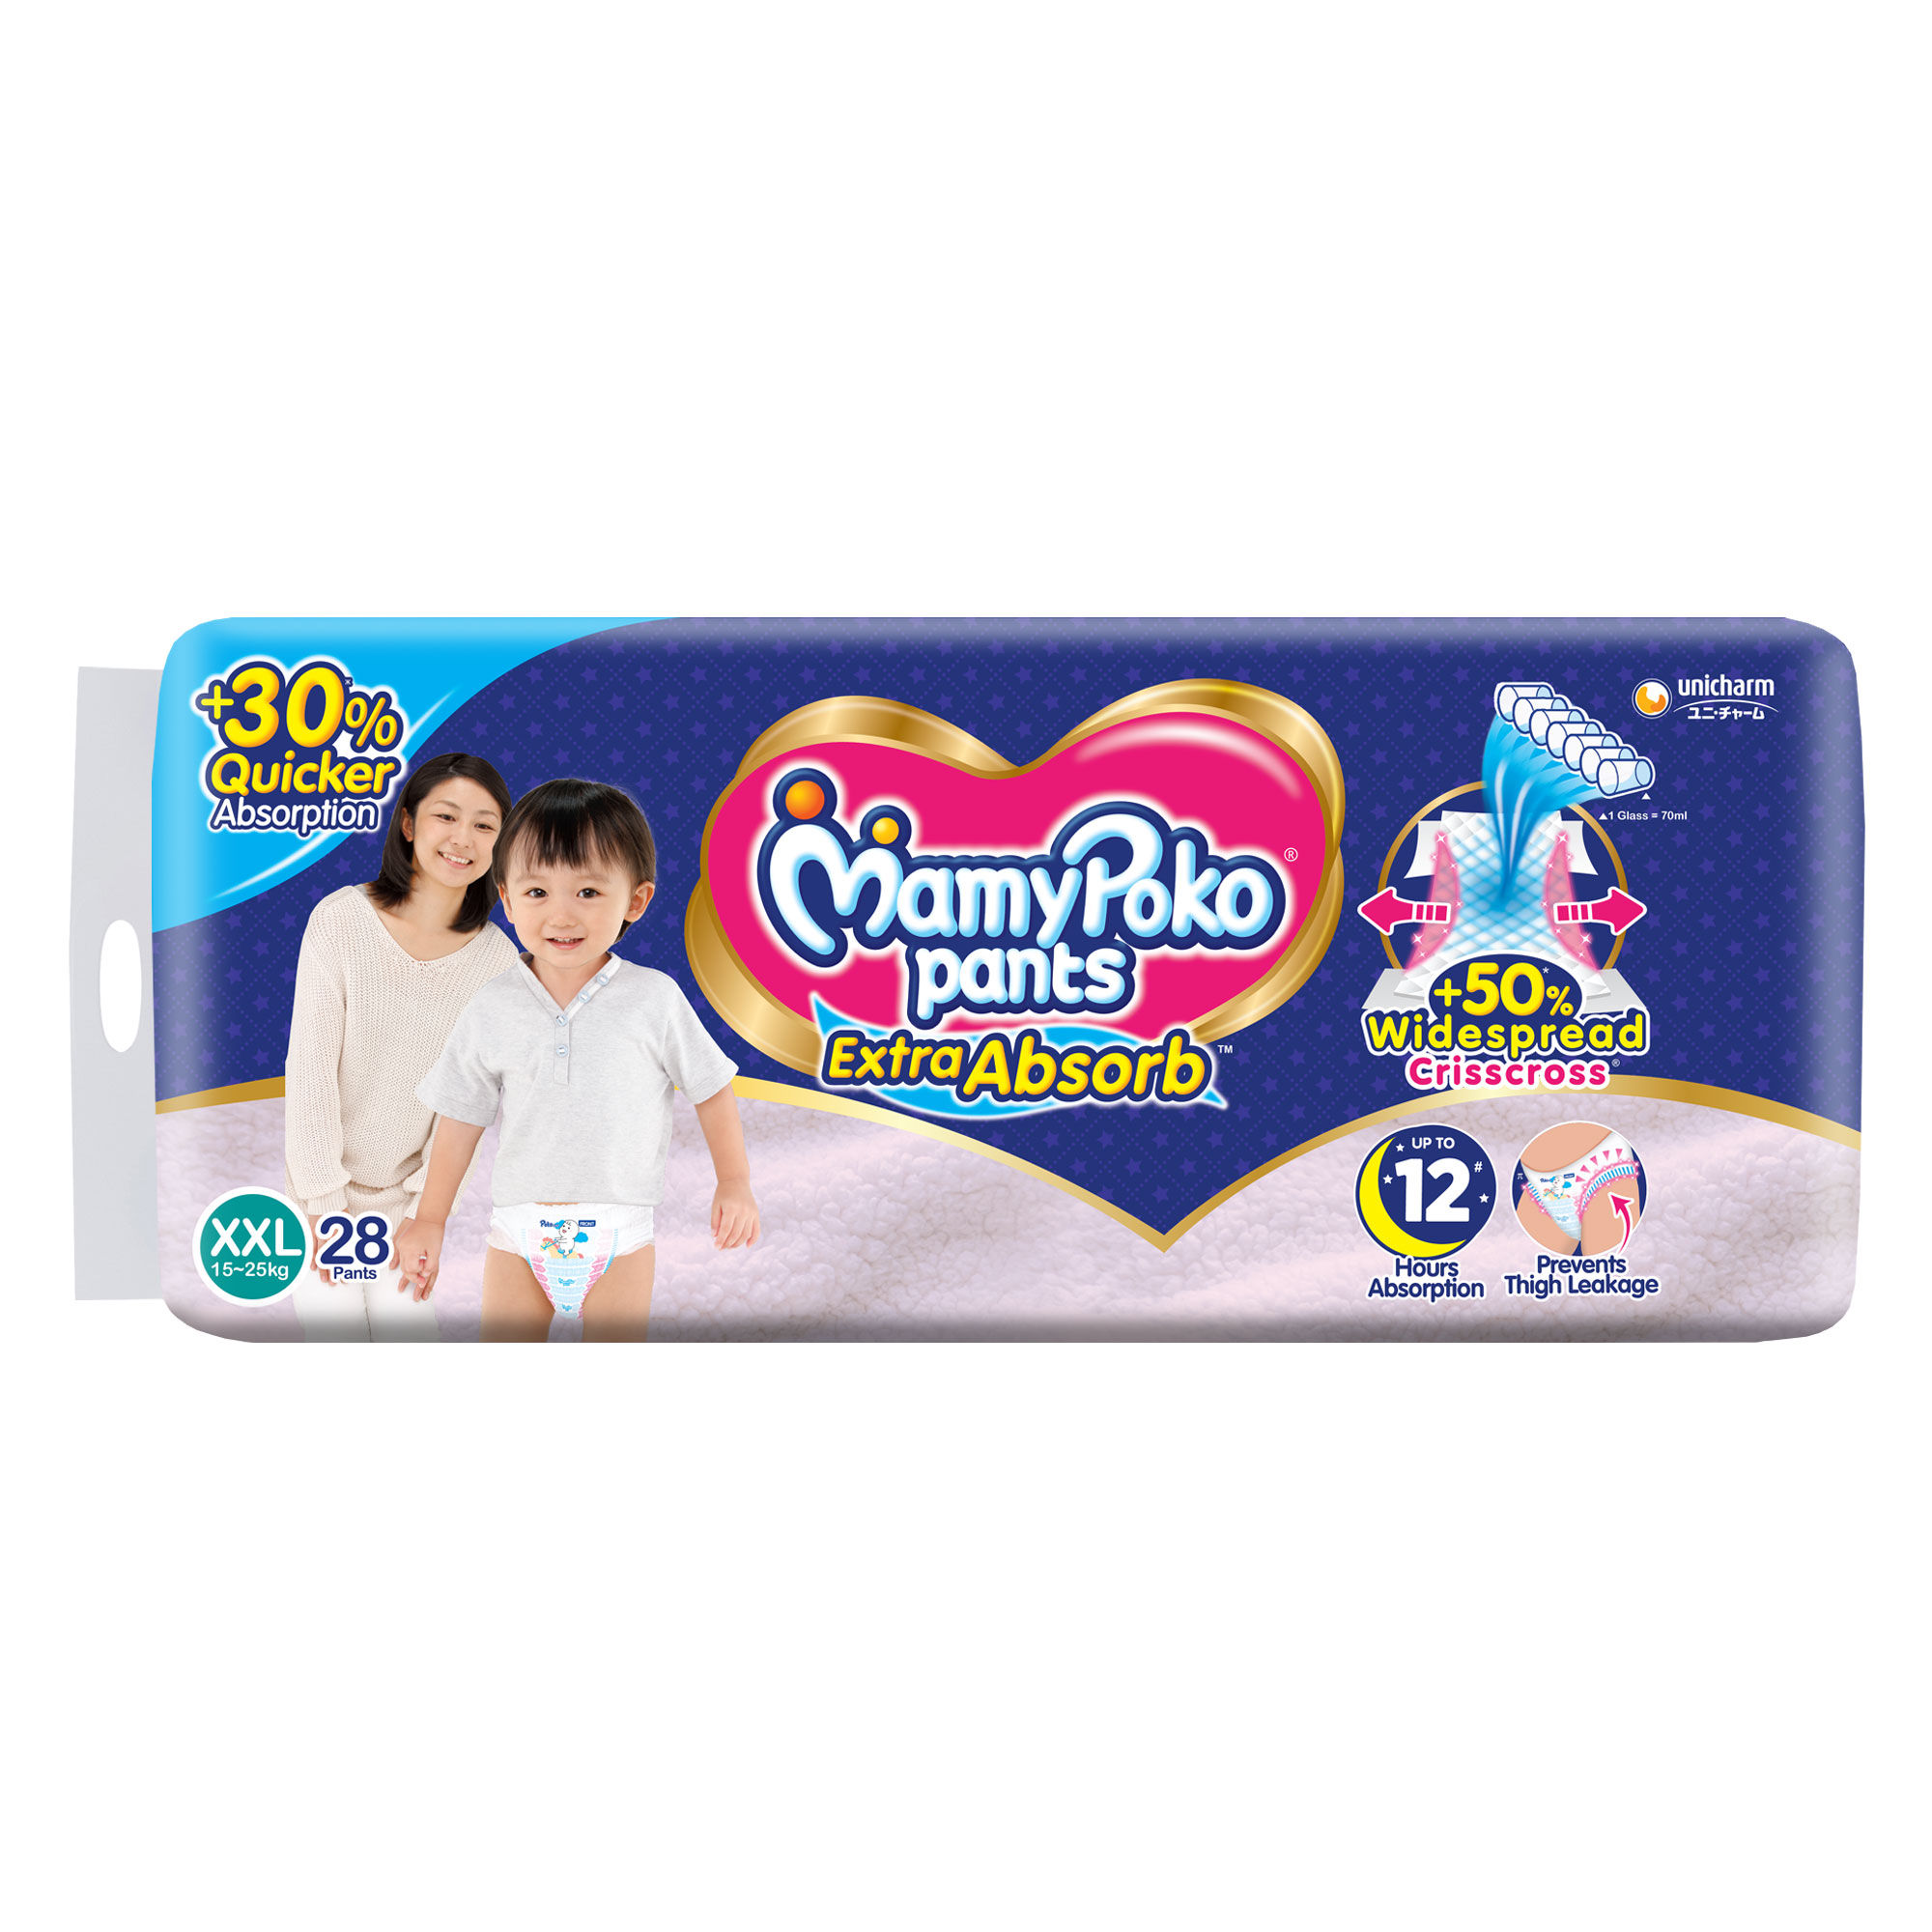 Buy Mamypoko Baby Diaper Pants Online in India